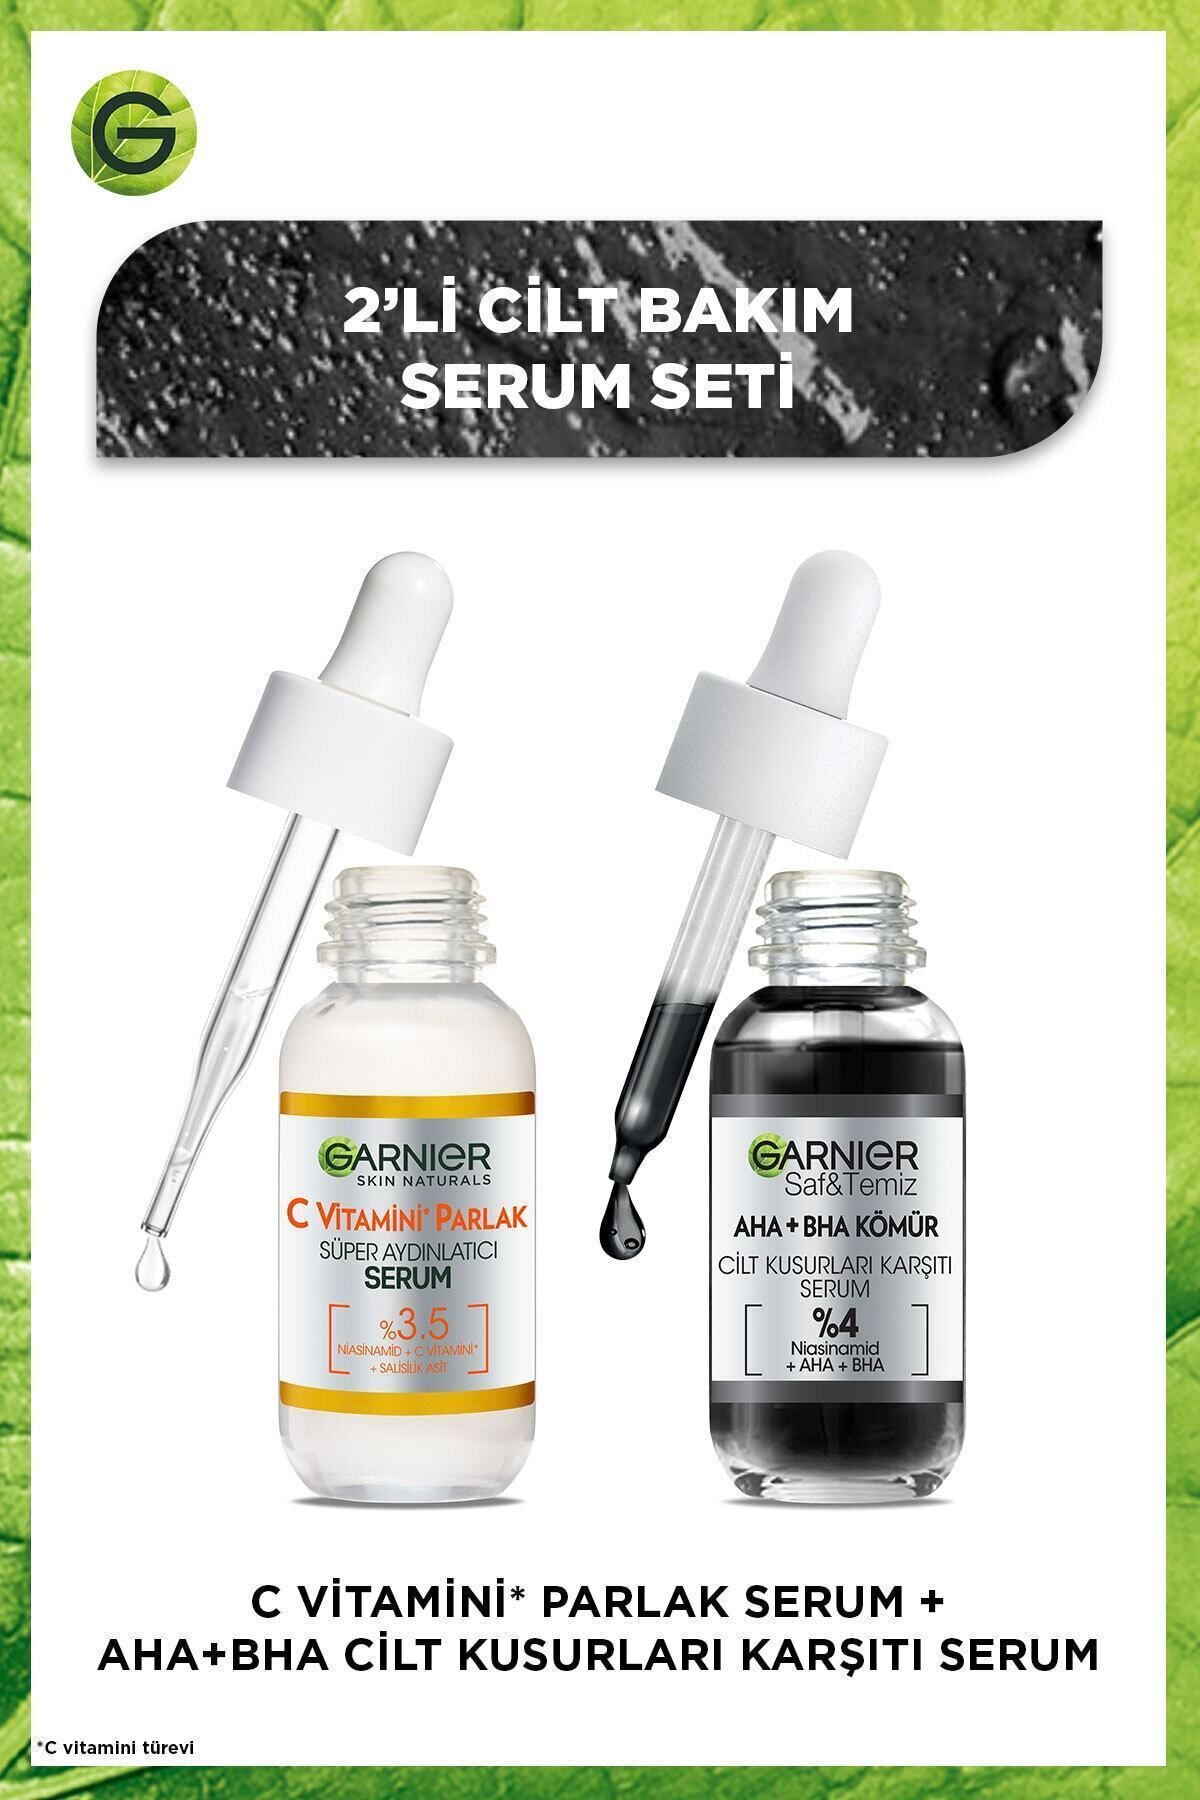 Garnier 2'li Serum Seti - Aha+bha Cilt Kusurları Karşıtı Serum & C Vitamini Parlak Süper Aydınlatıcı Serum